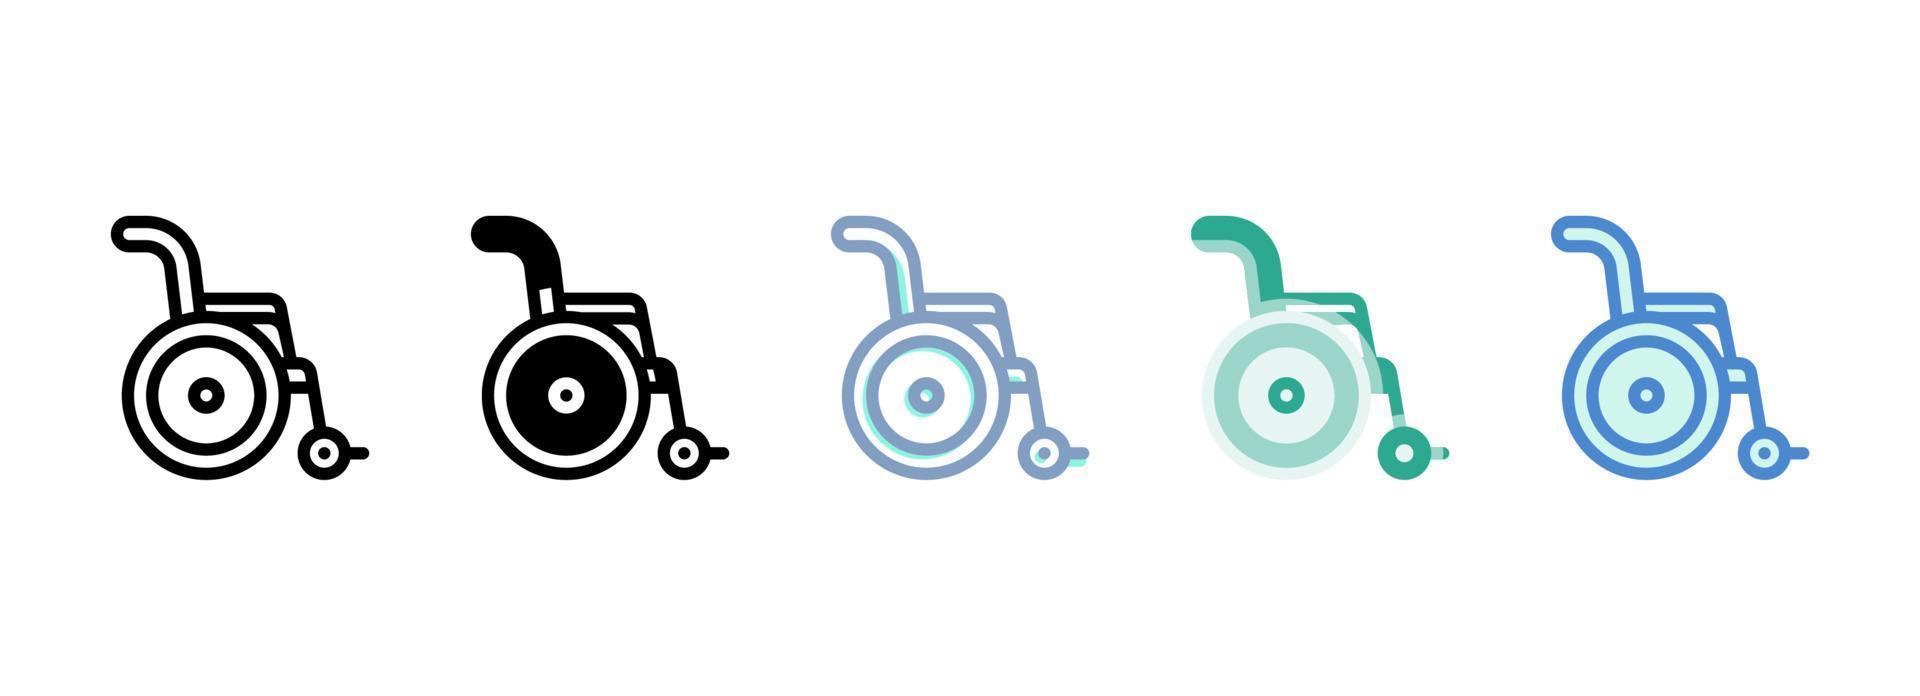 sencillo vector icono en un tema silla de ruedas